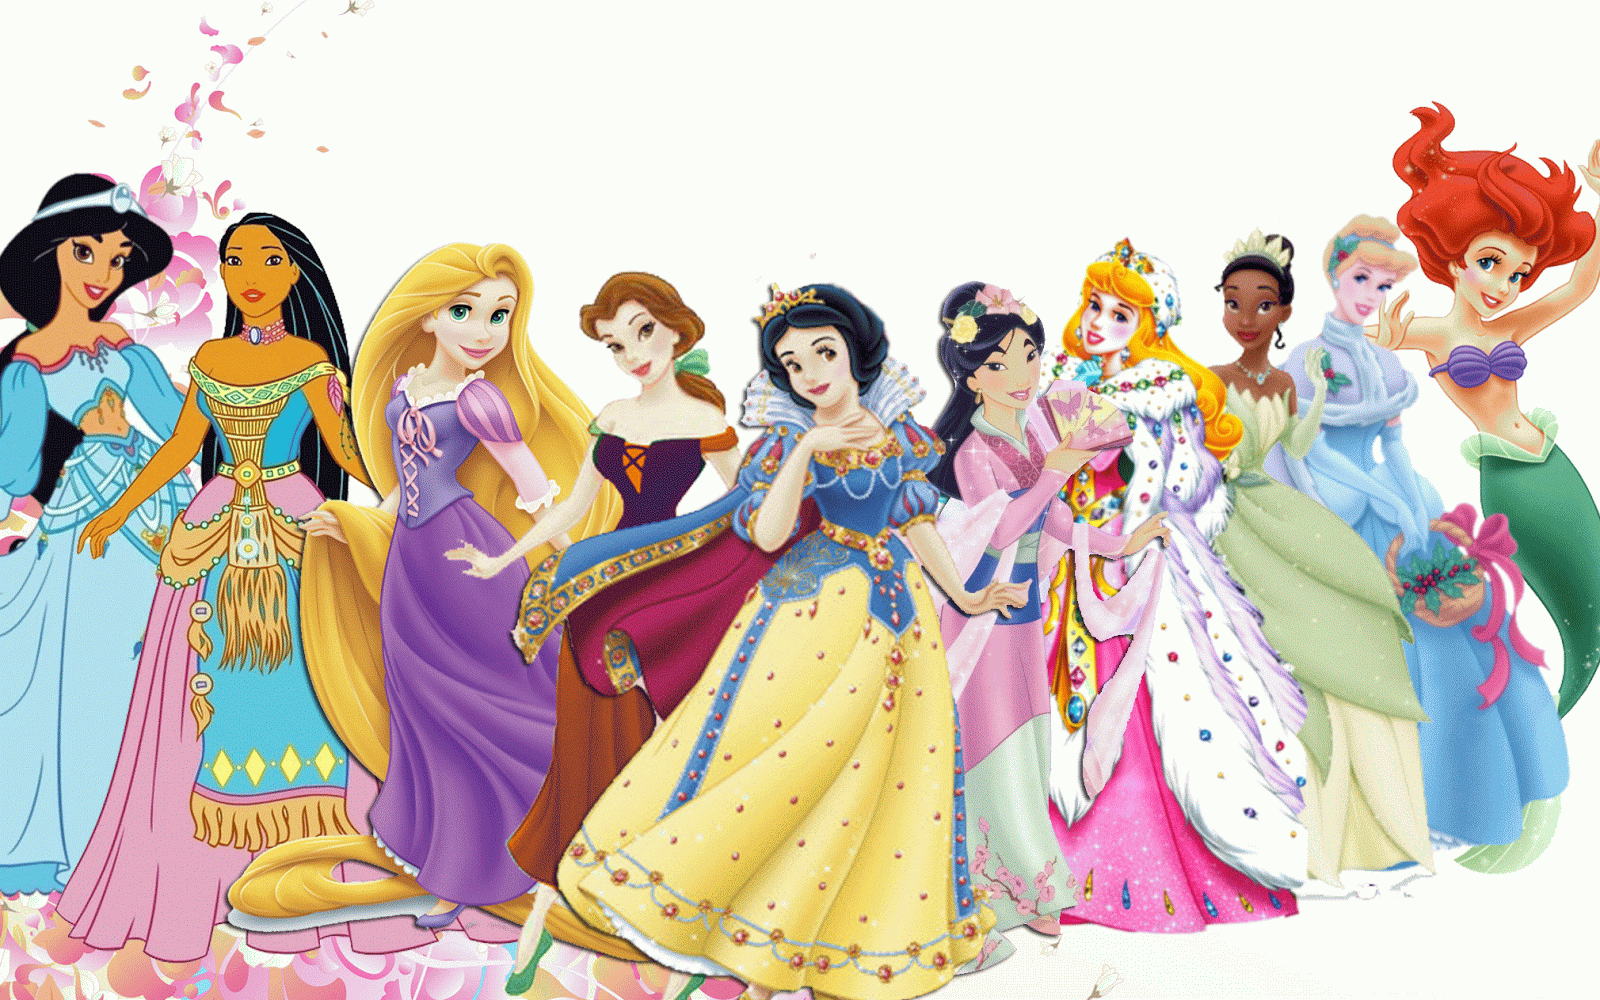 Imagens Grandes Princesas Disney °o° Tudo Disney °o°